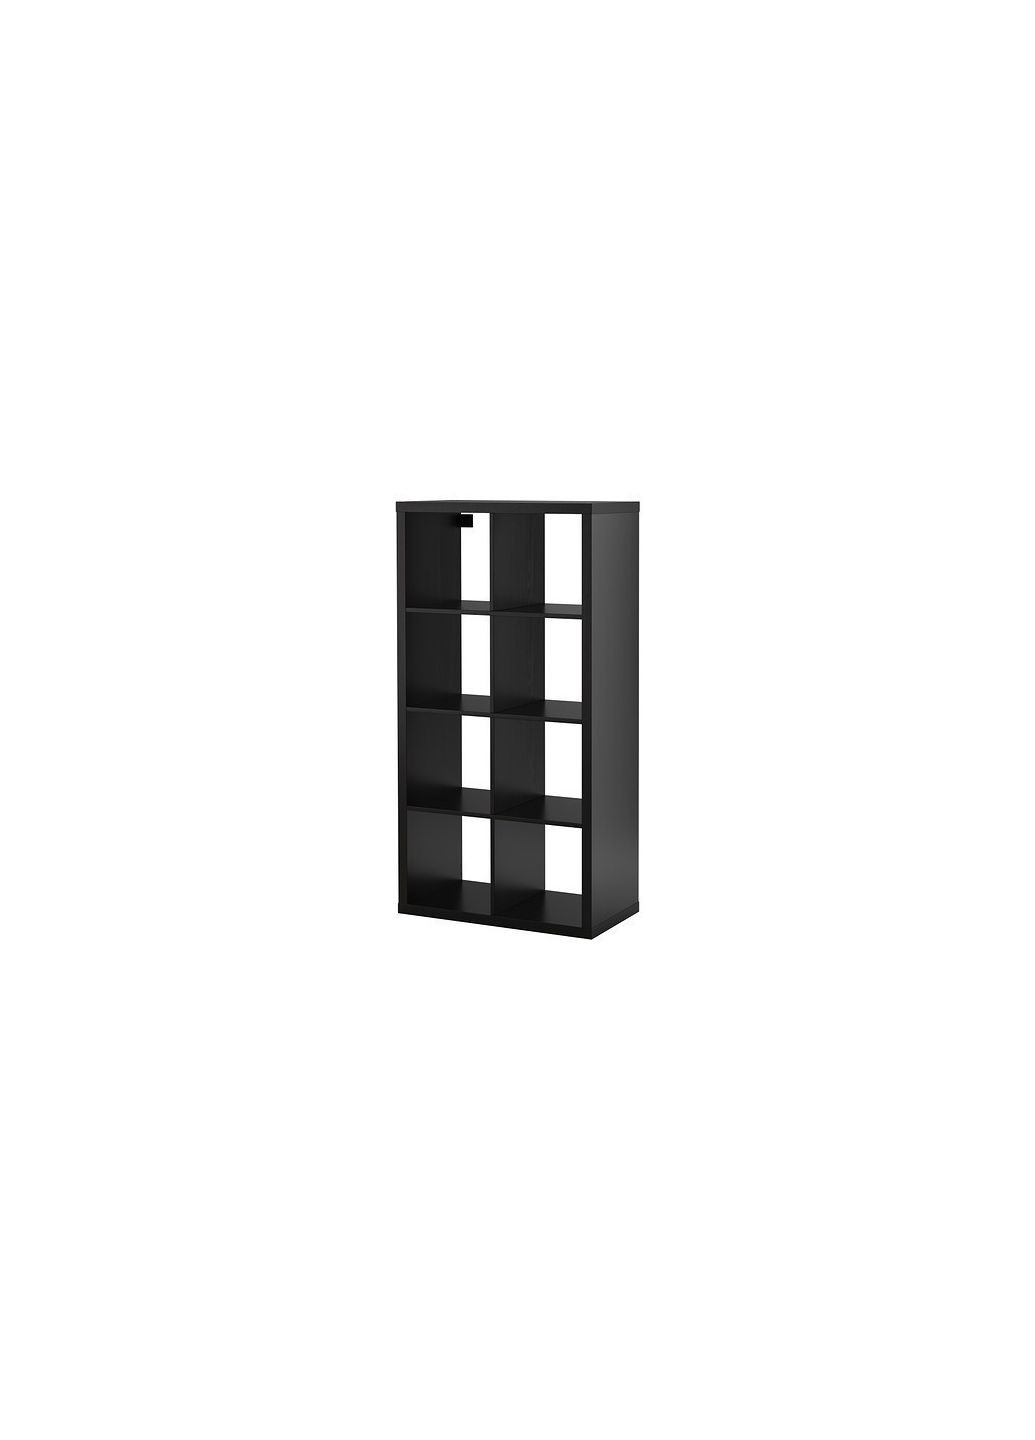 Стеллаж 2х4 ящика чернобронзовый IKEA (272150530)